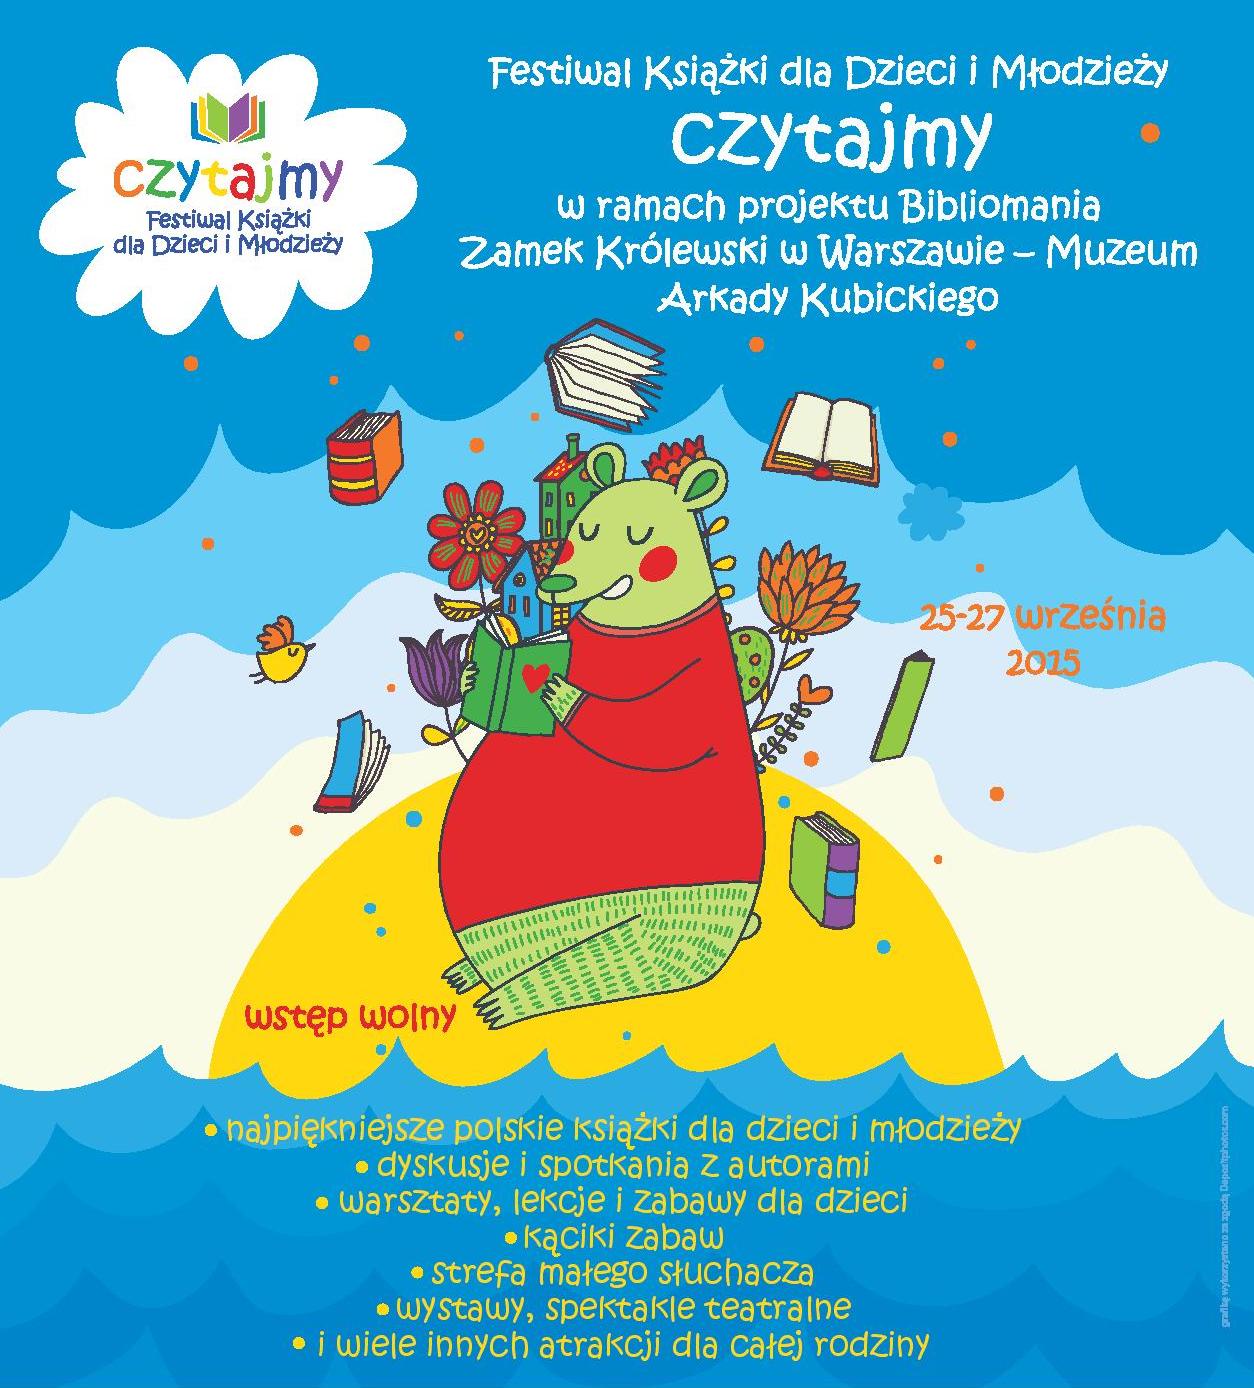 Festiwal Książki dla Dzieci i Młodzieży Czytajmy – plakat (źródło: materiały prasowe organizatora)